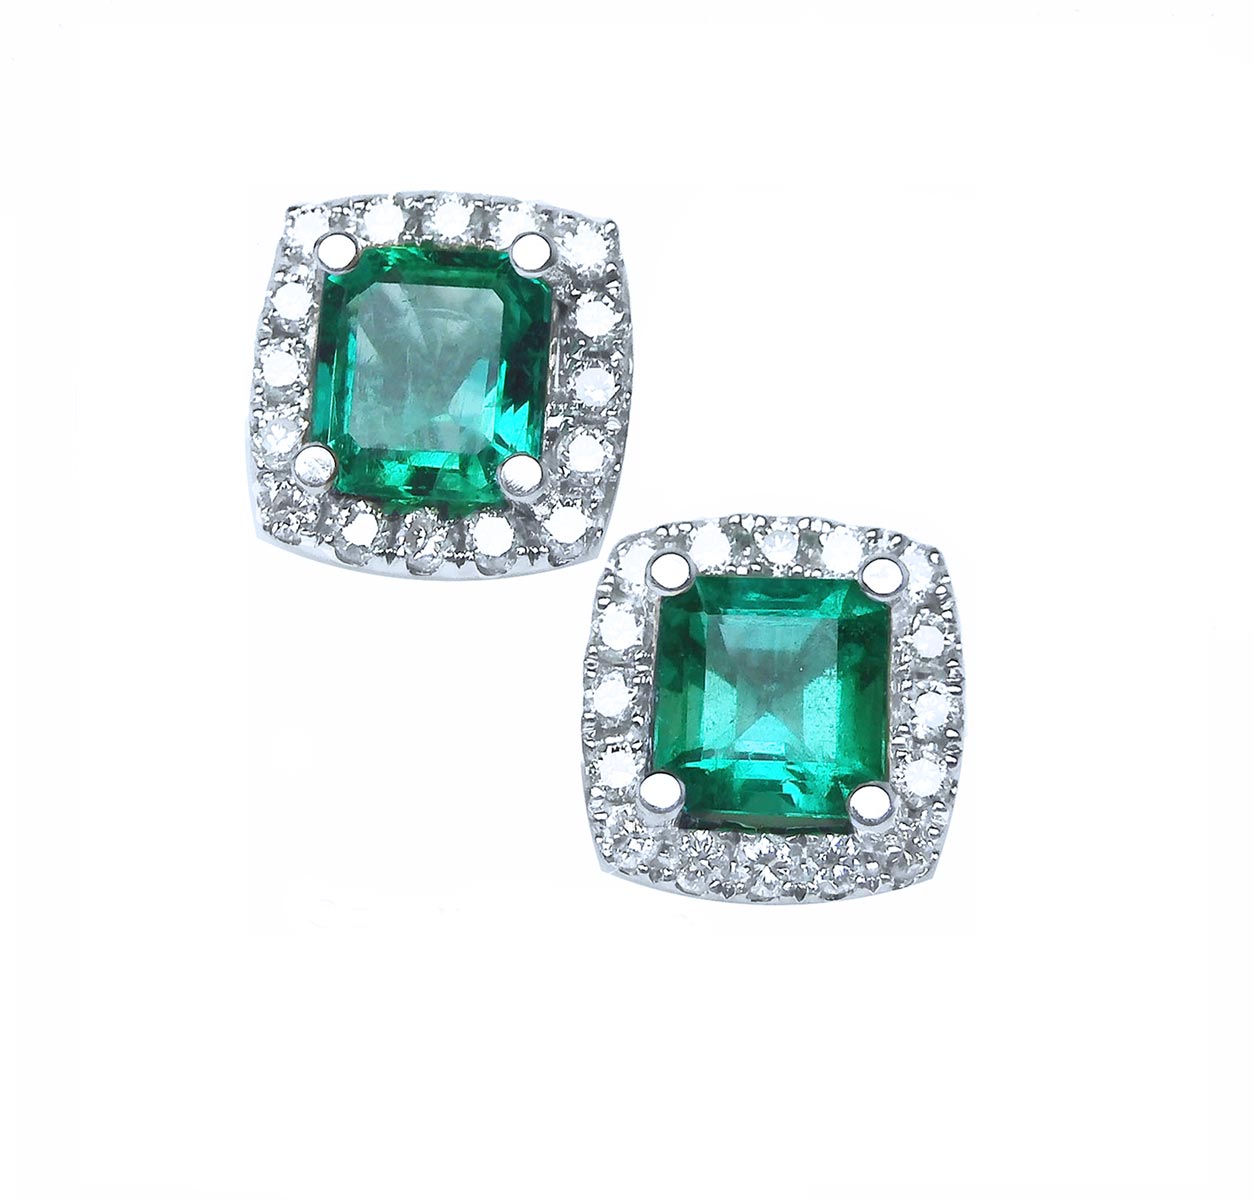 Emerald earrings Colombian emerald jewelry